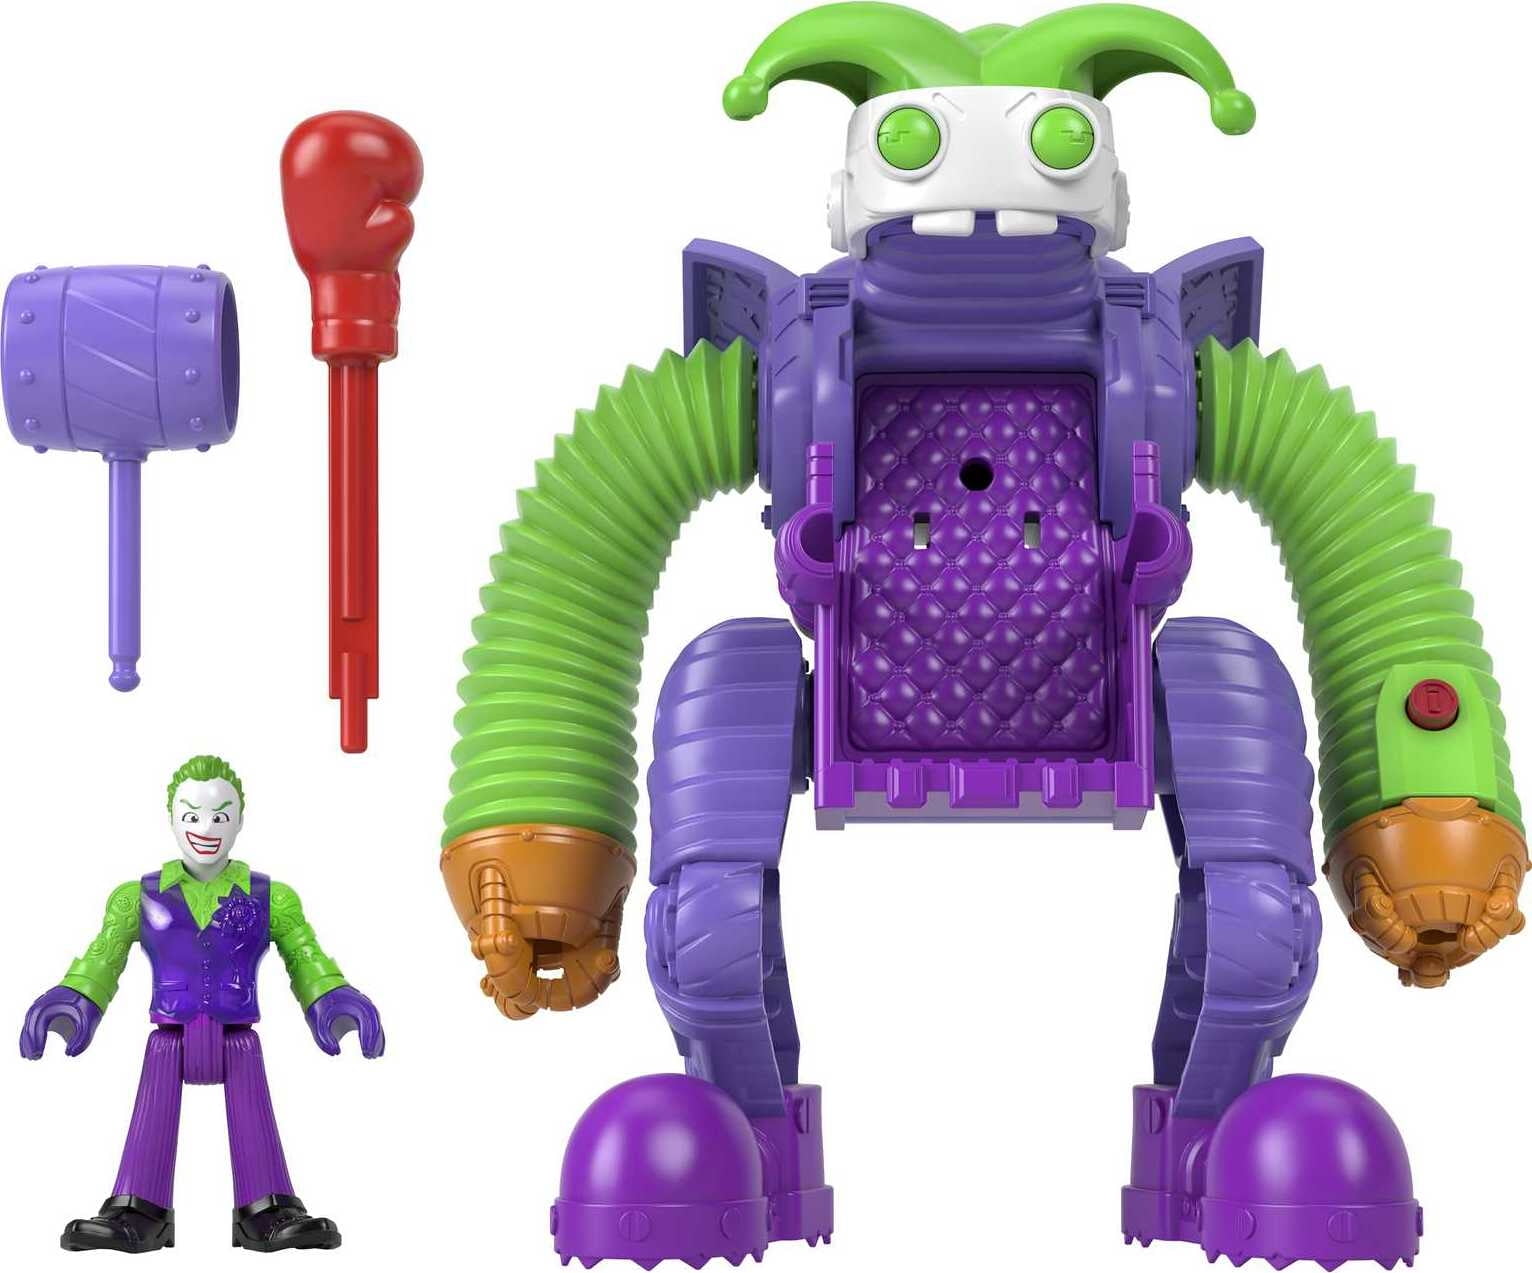 Imaginext DC Super Friends The Joker Battling Robot, 3-Piece Figure Set with Lights for Preschool Kids